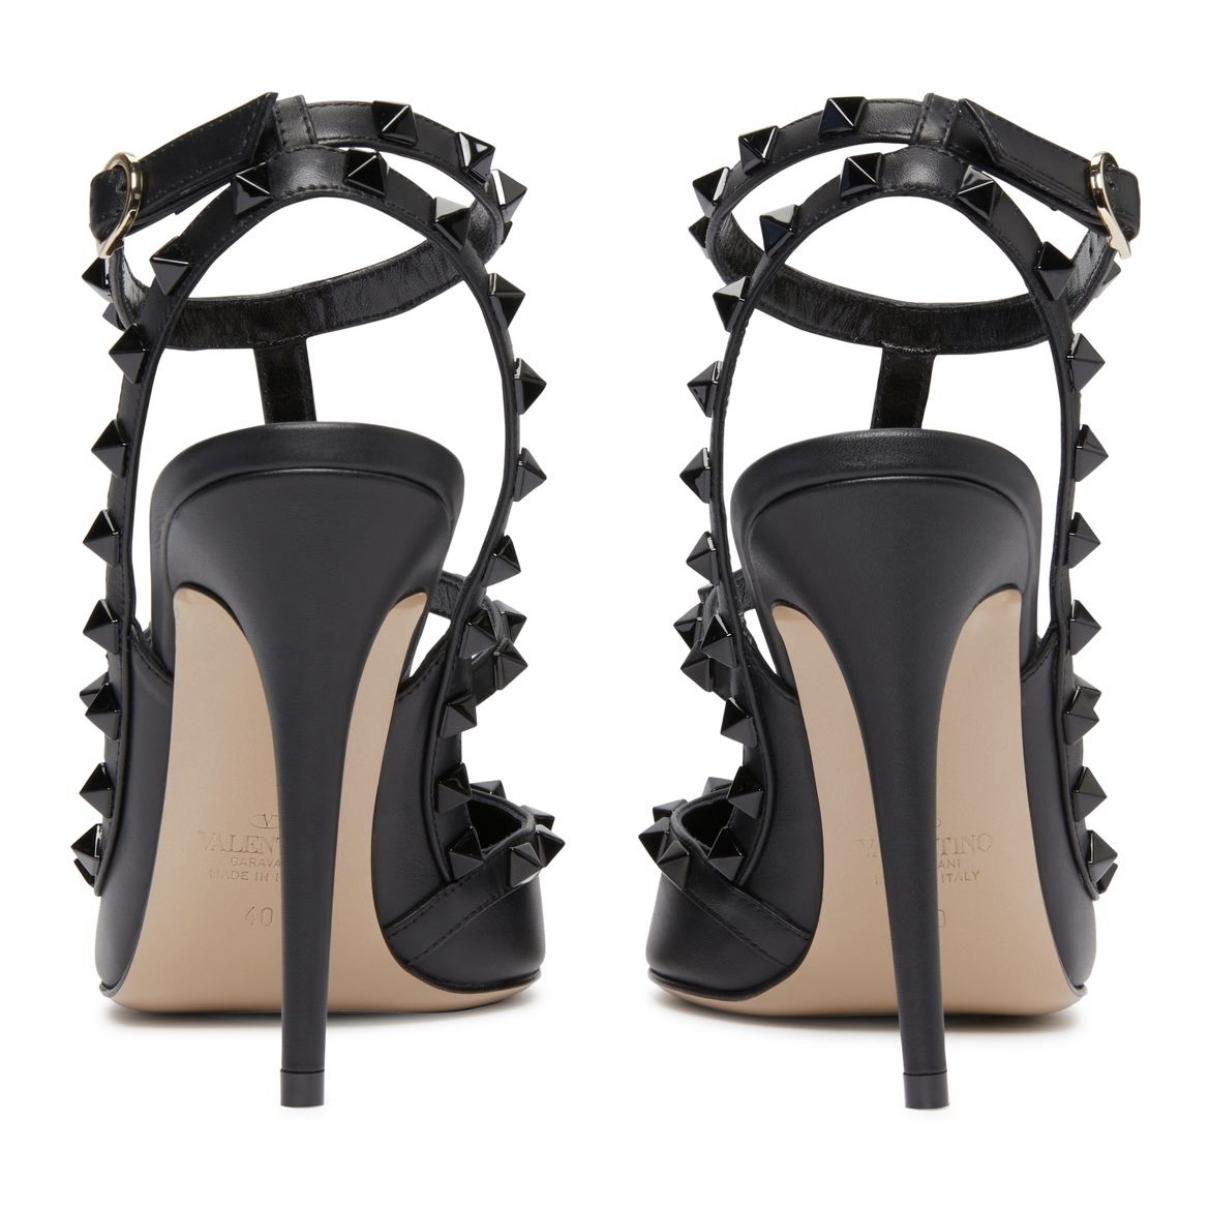 Rockstud leather heels - 5